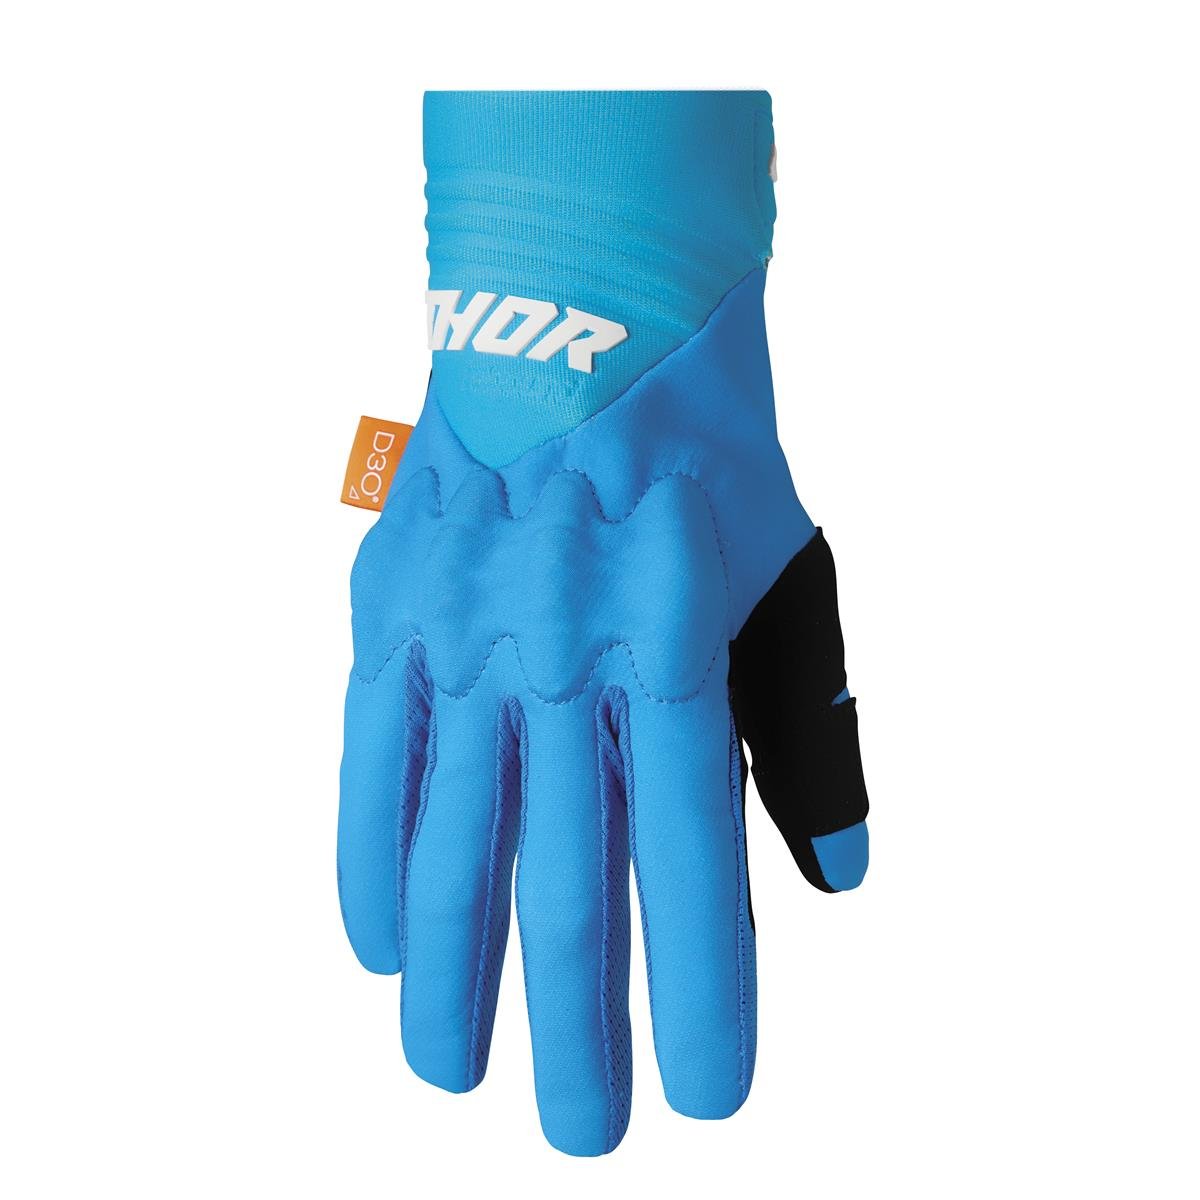 Thor Handschuhe Rebound Blau/Weiß